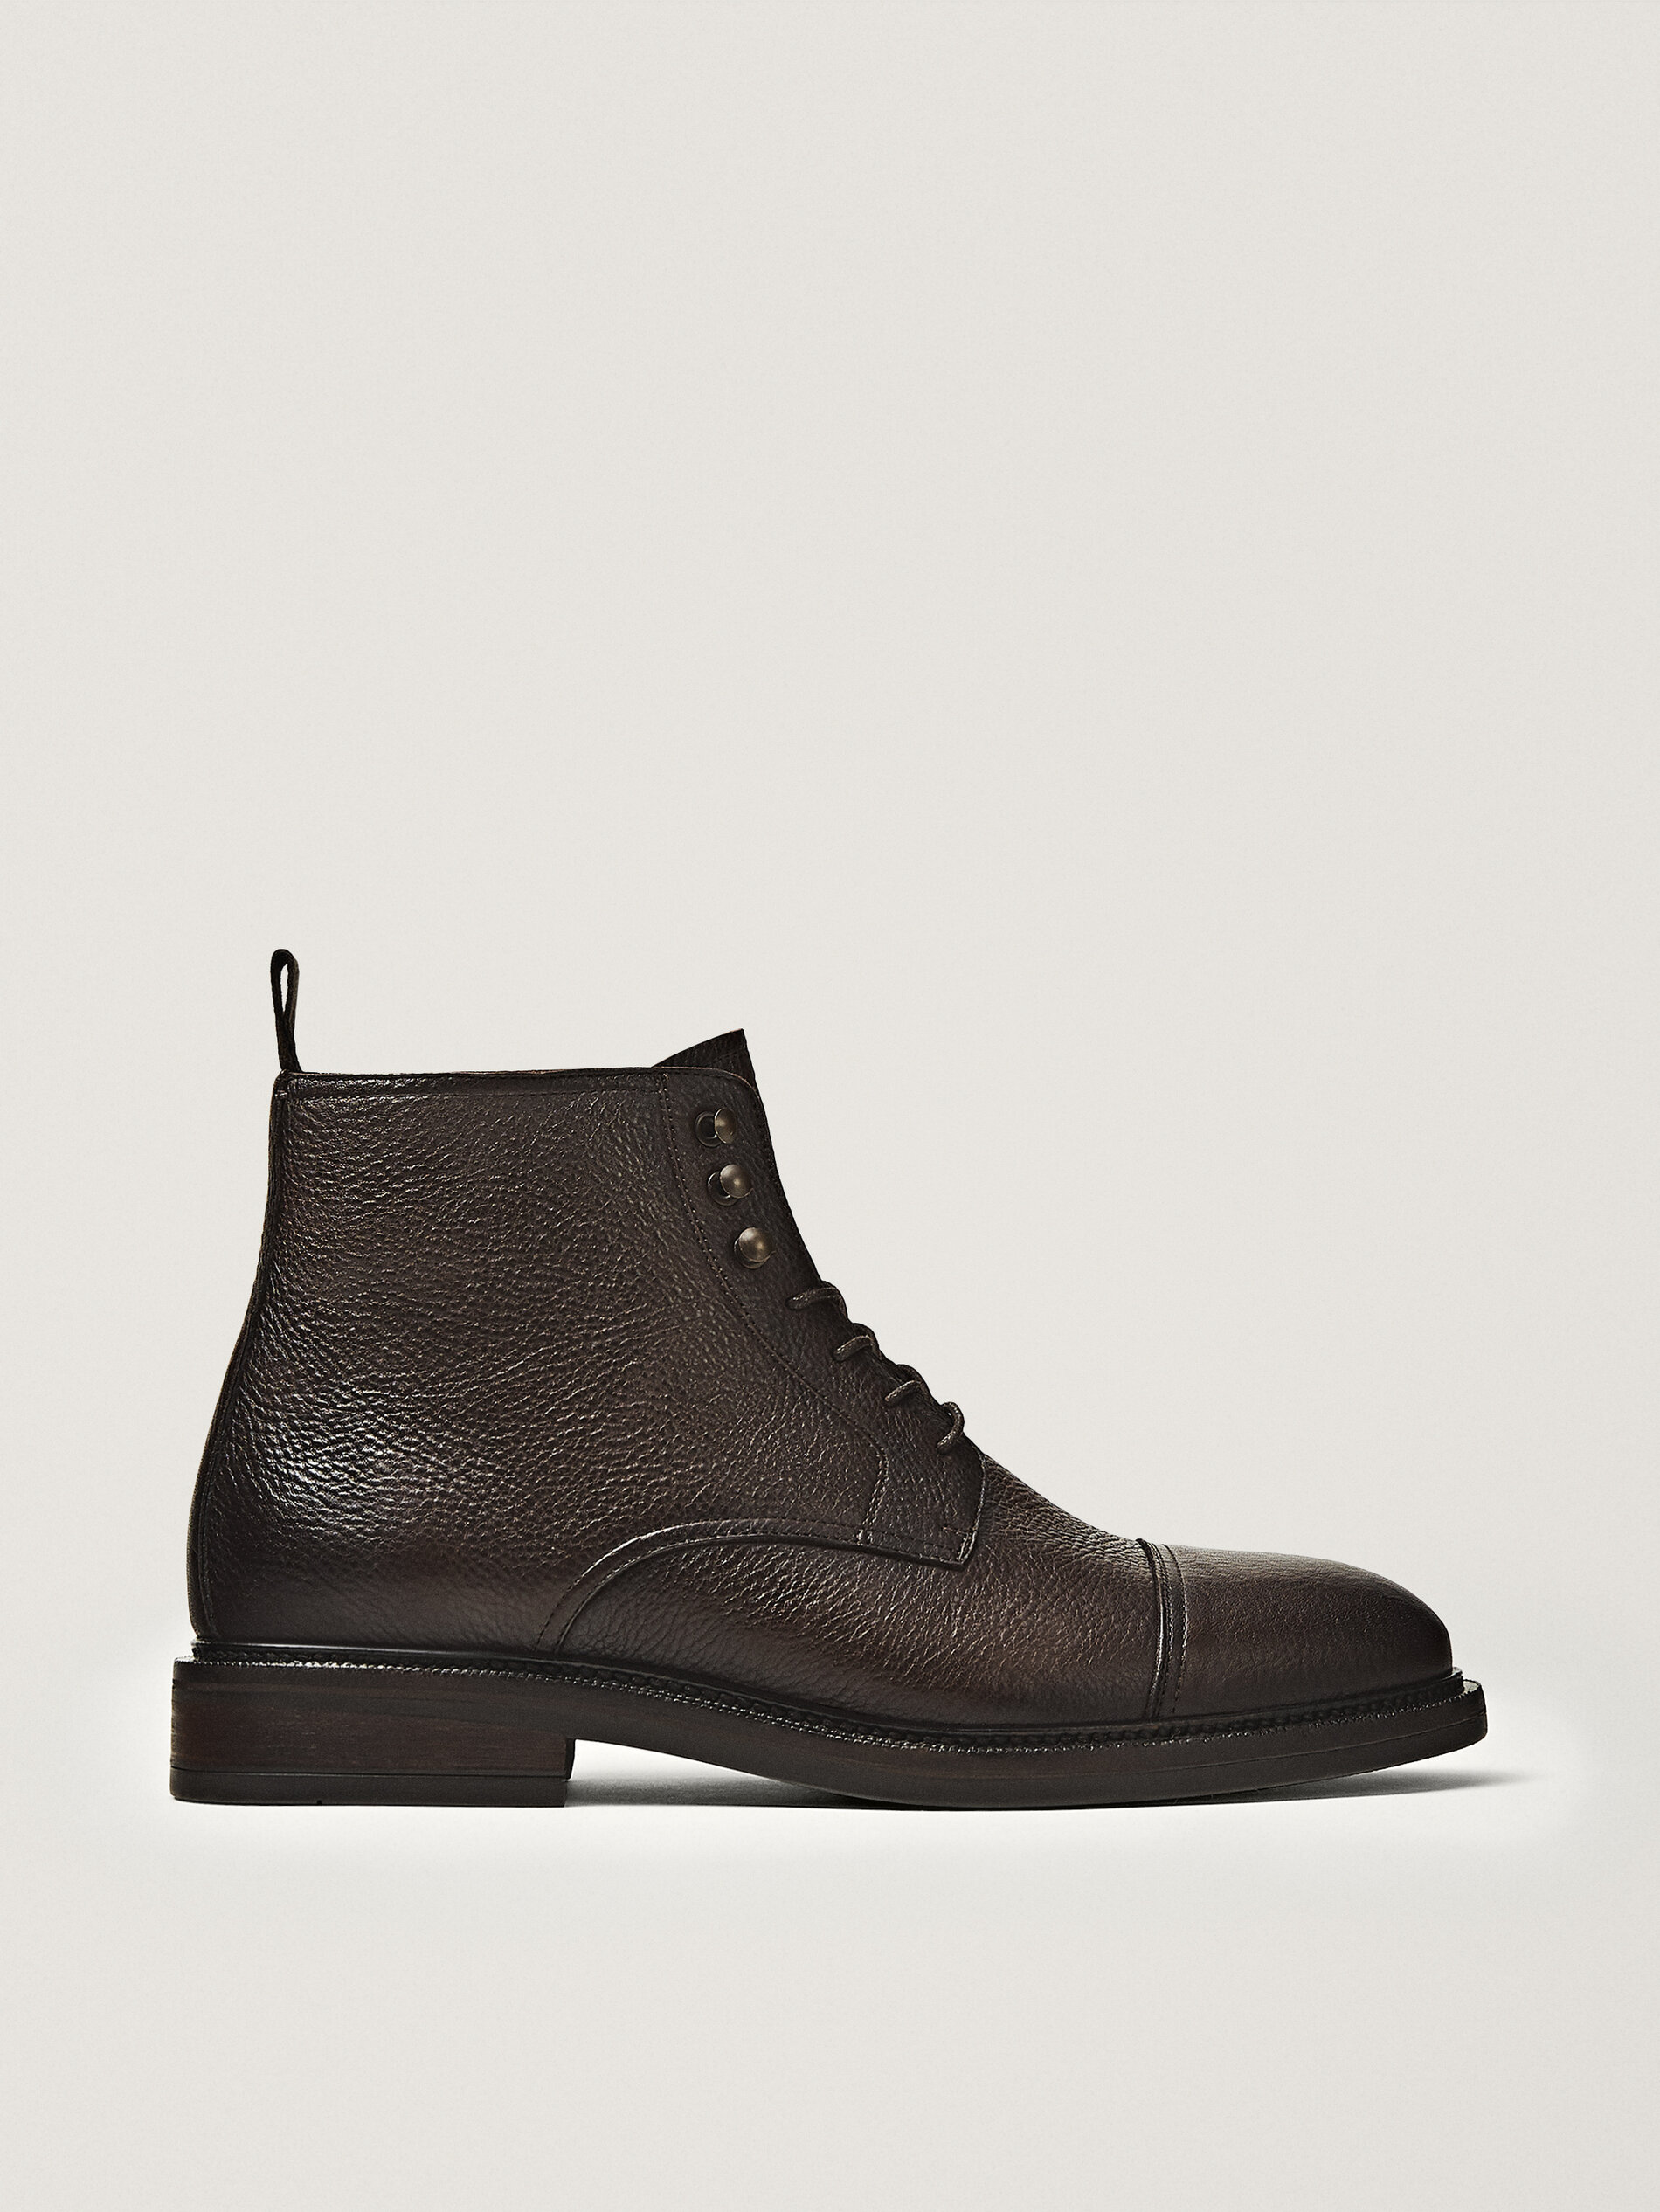 black leather shoes mens sale